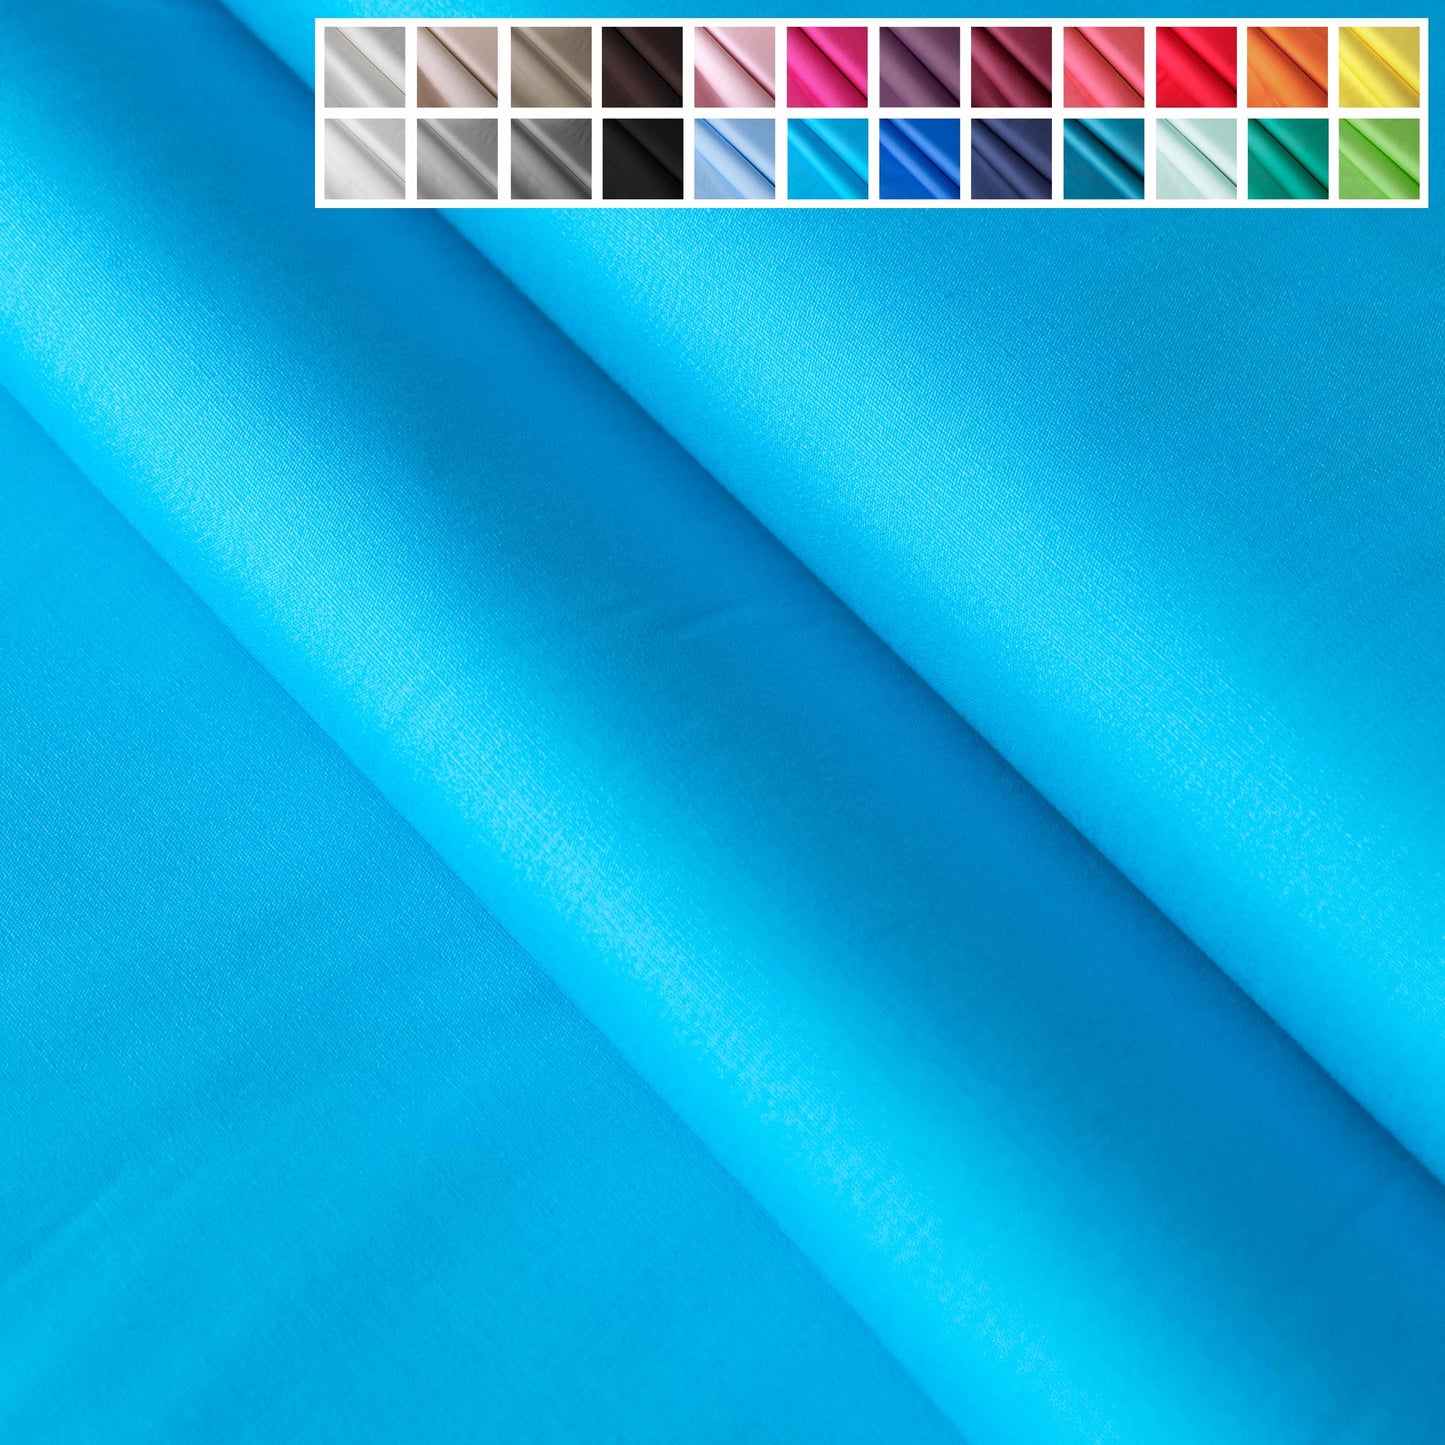 Baumwollstoffe Uni / Einfarbig - über 20 FarbenBaumwollstoff UniStoffe KudellinoStoffe Kudellino